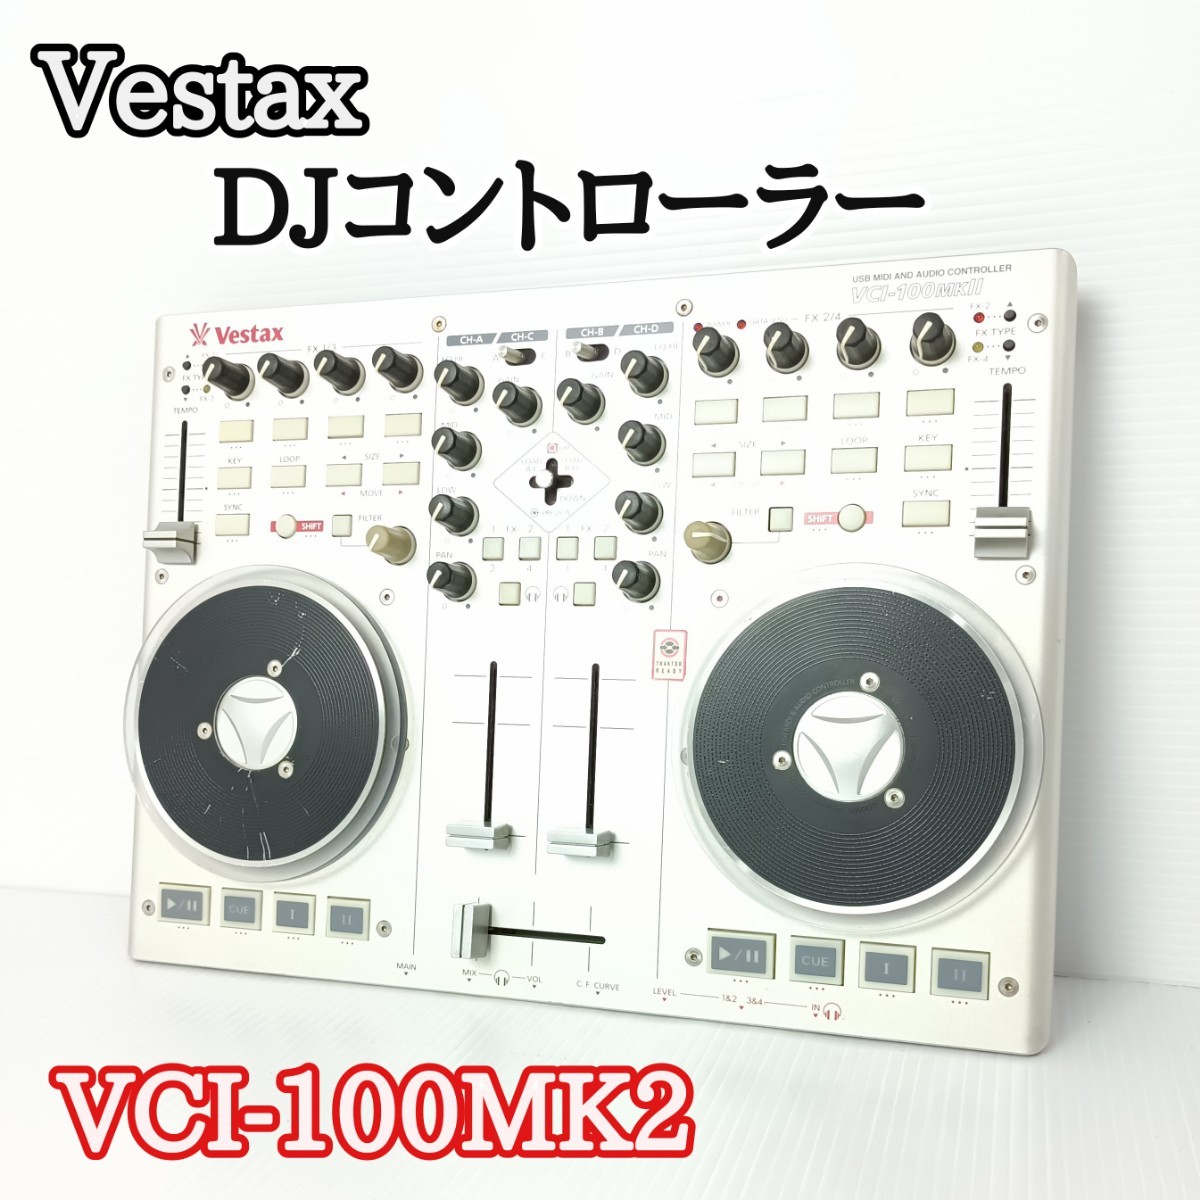 Vestax ベスタクス VCI-100MK2 DJ MIDI コントローラー | monsterdog